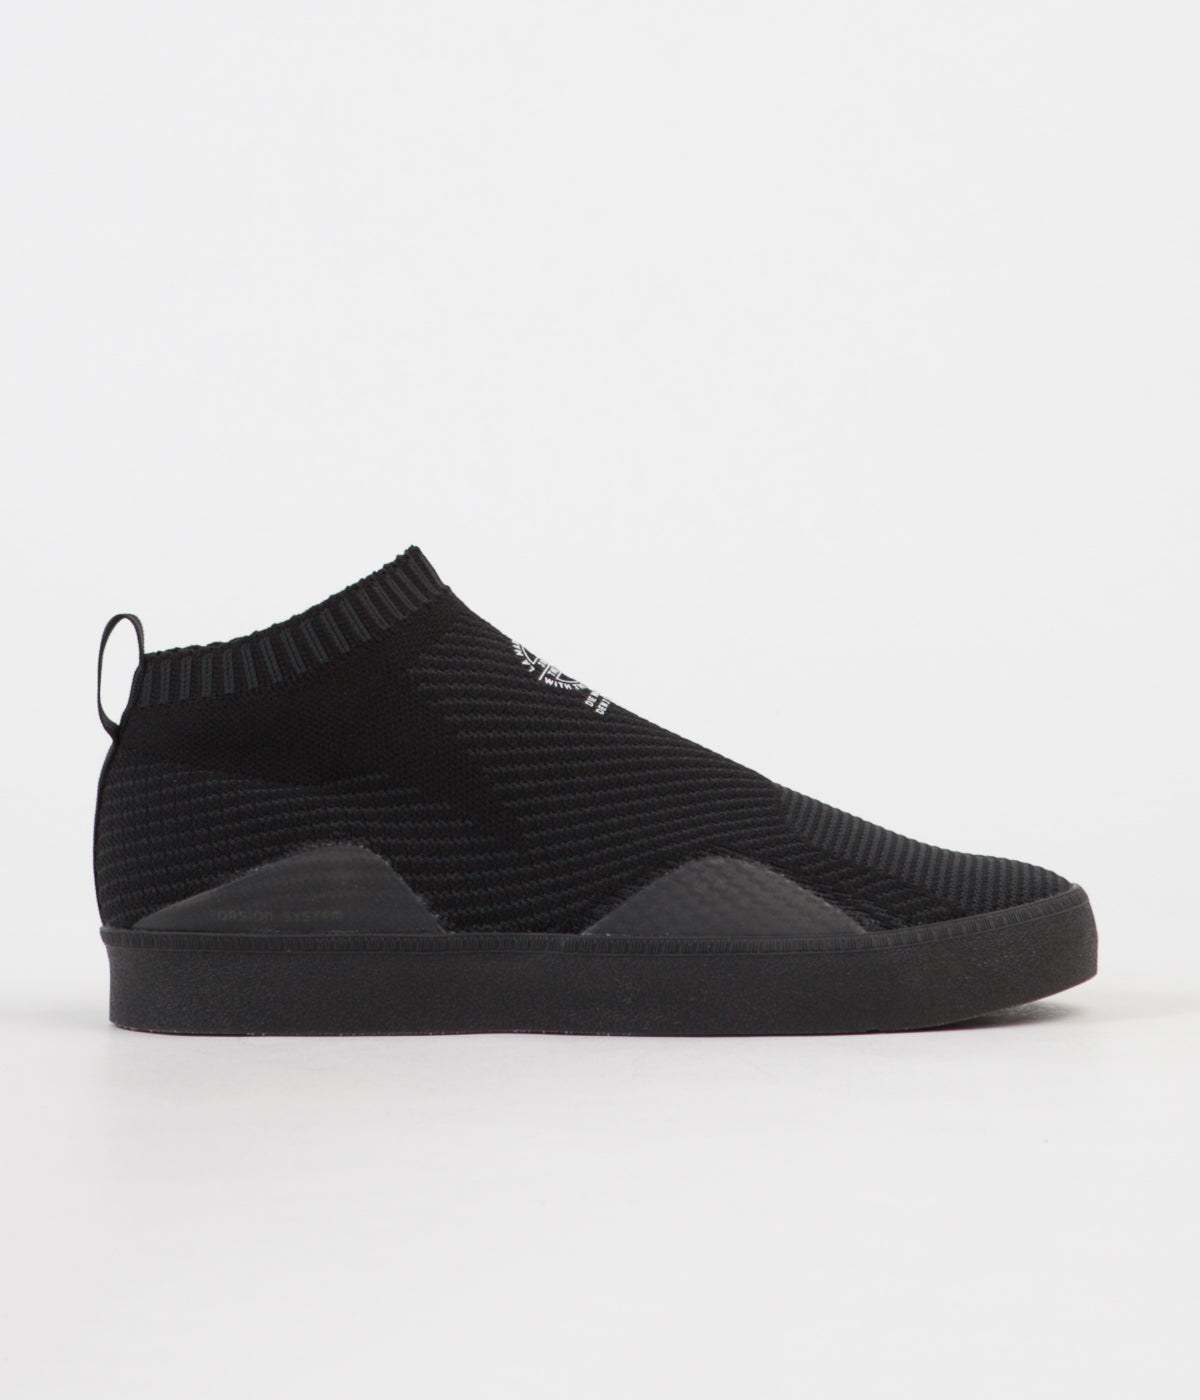 zweer aankleden Plantage Adidas 3ST.002 Primeknit Shoes - Core Black / Carbon / White | Flatspot